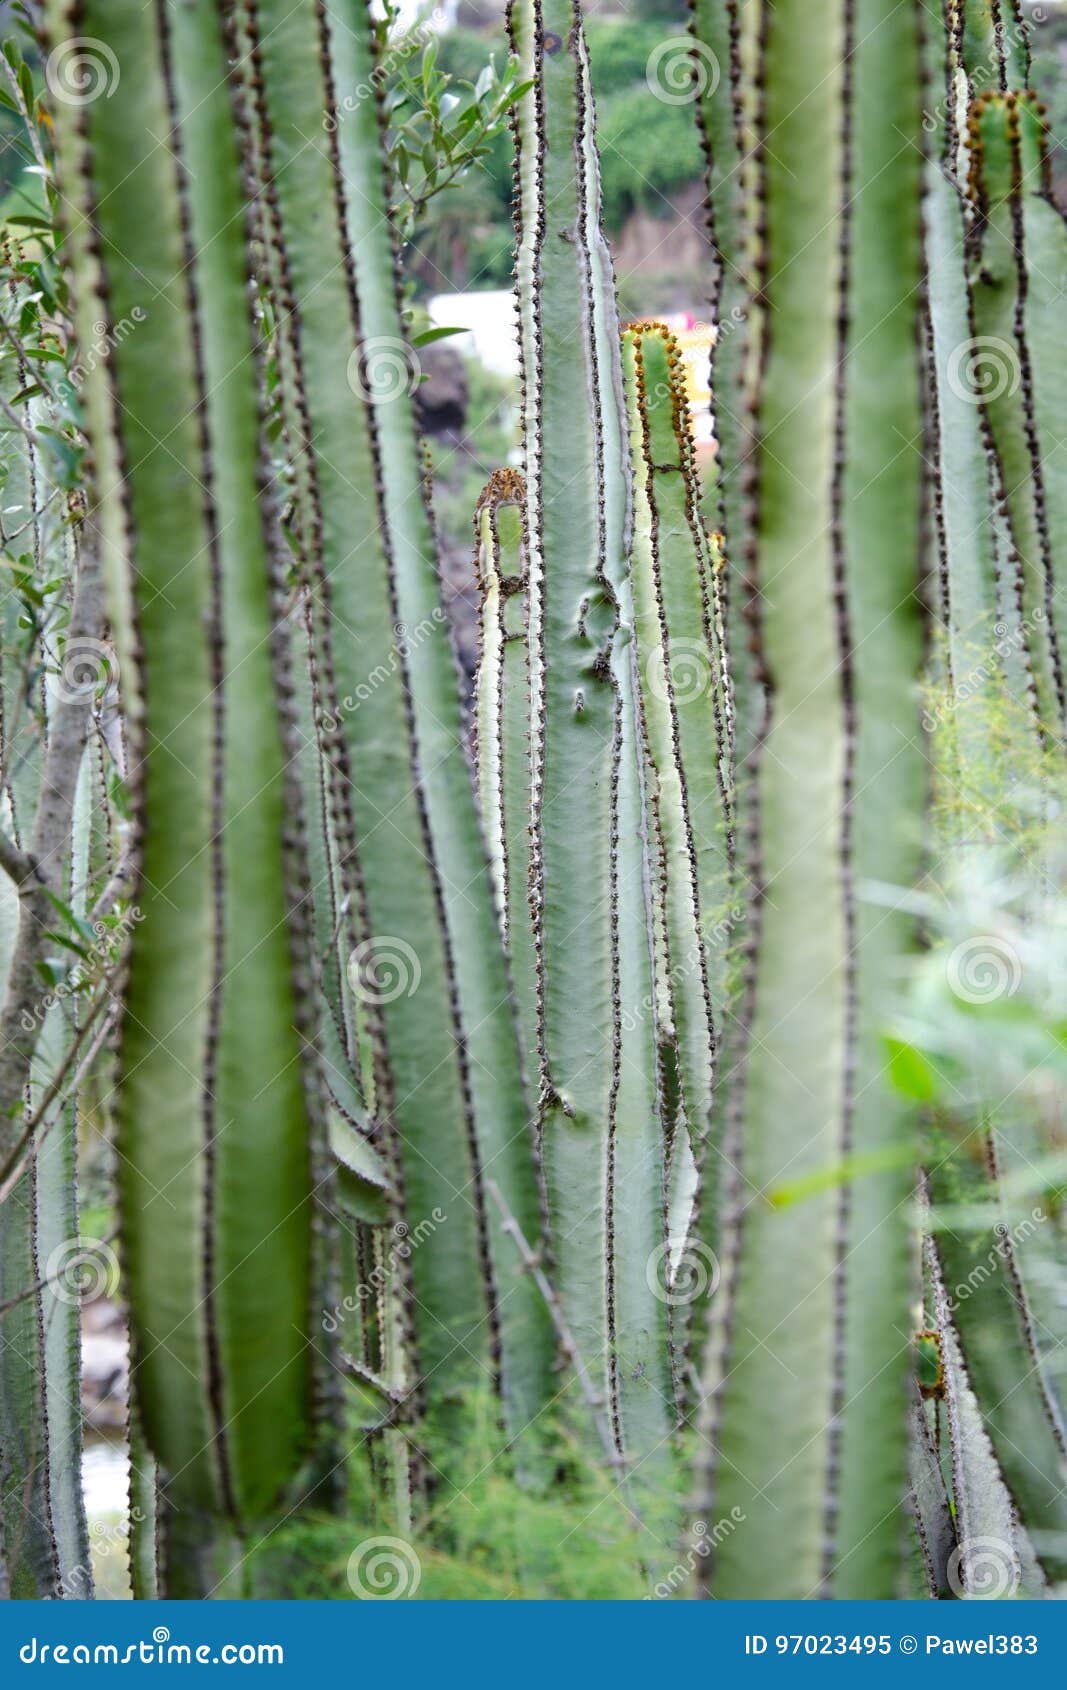 cactus in jardÃÂ­n botÃÂ¡nico canario, gran canaria, spain